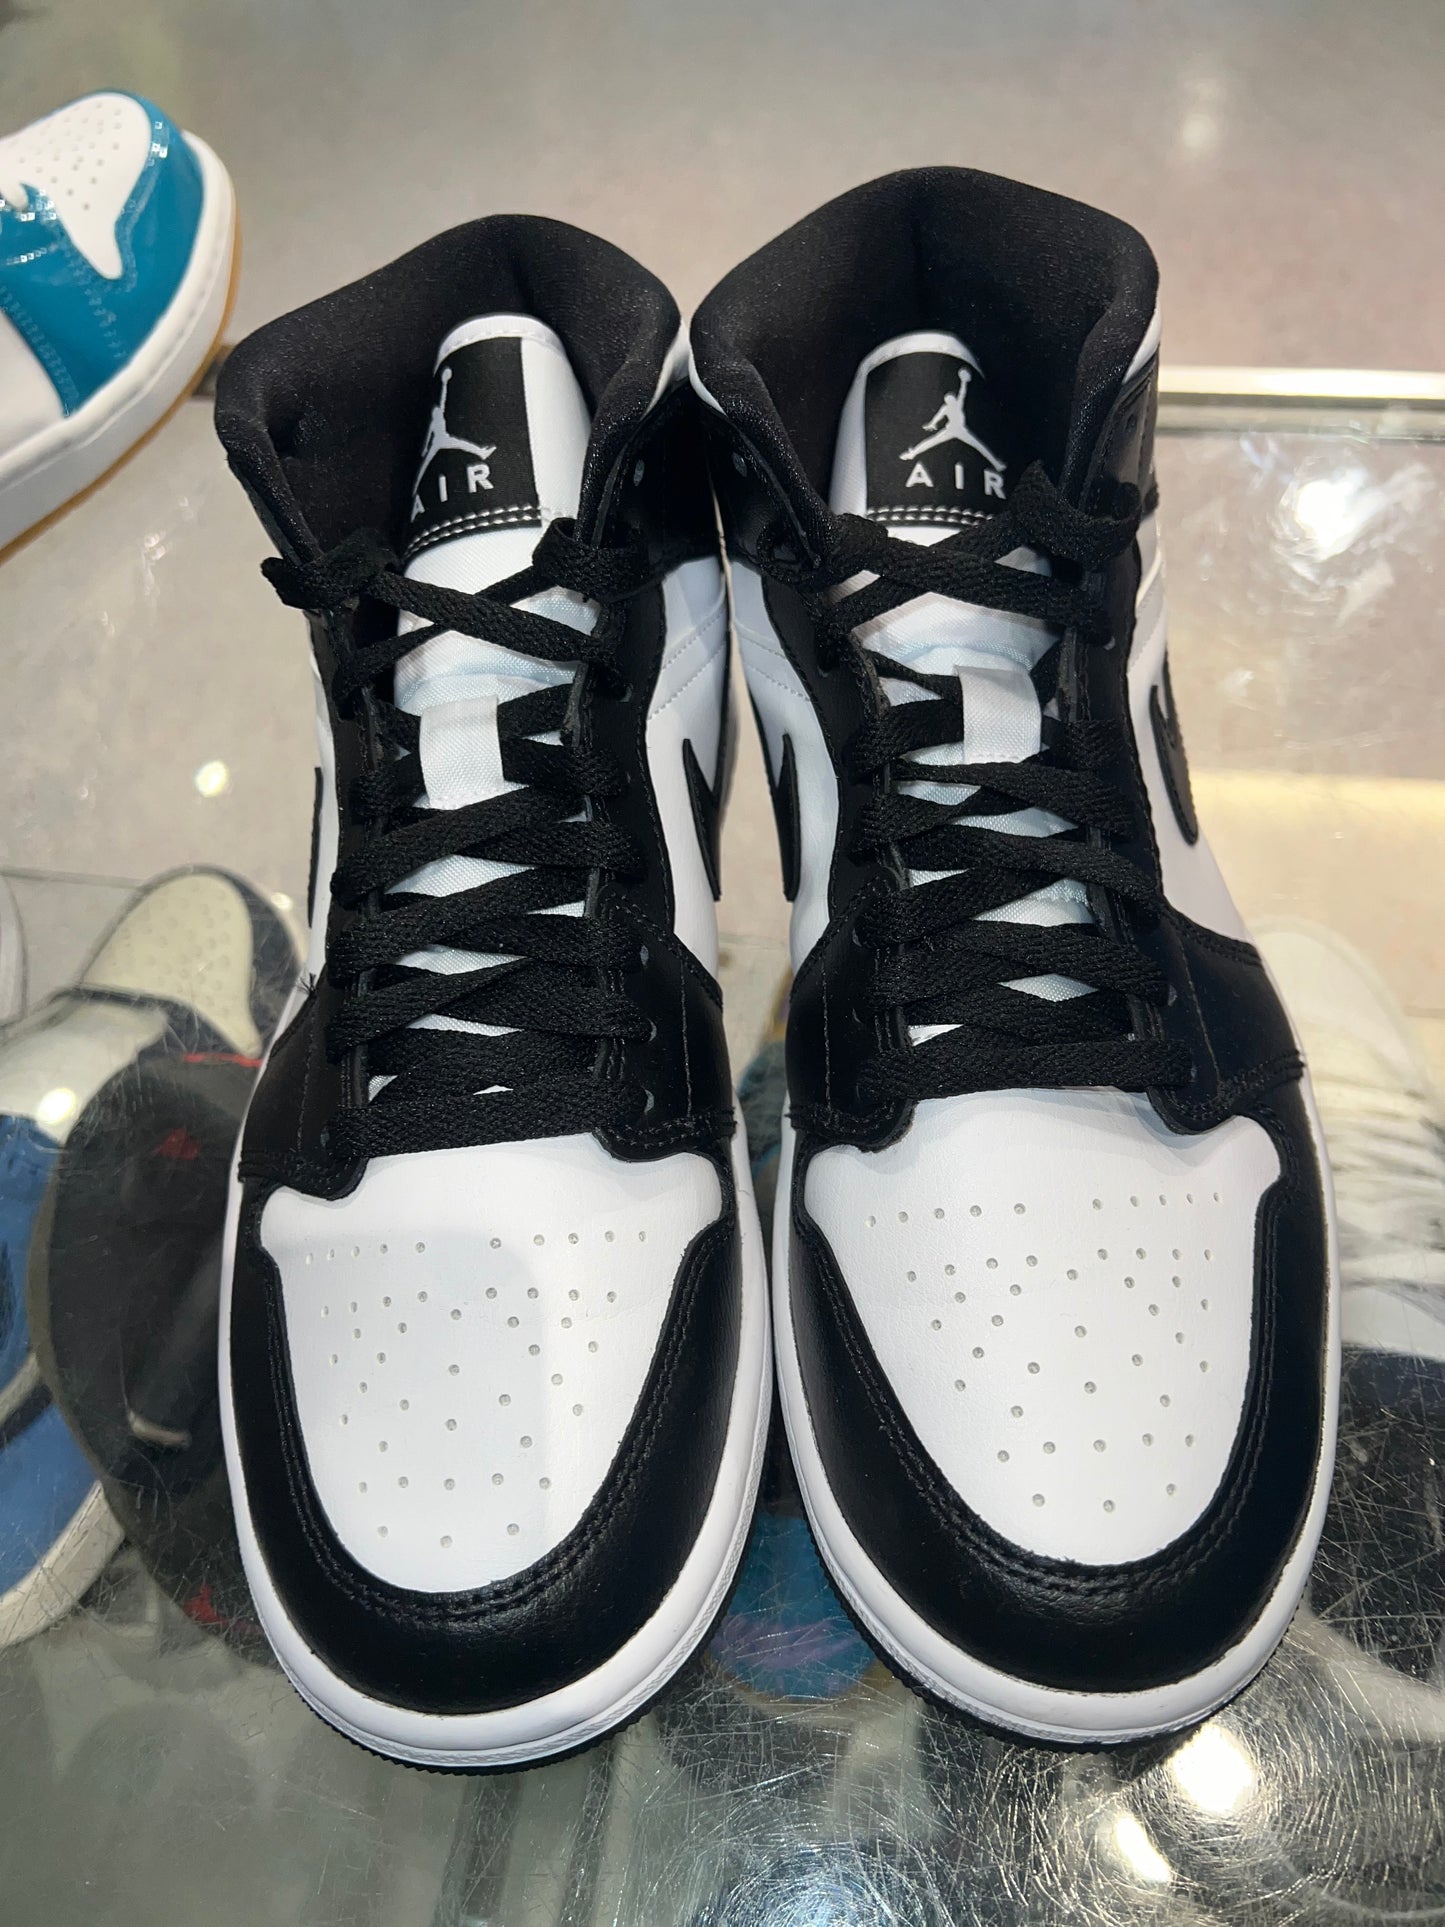 Size 7 (8.5w) Air Jordan 1 Mid “Panda” Brand New (Mall)